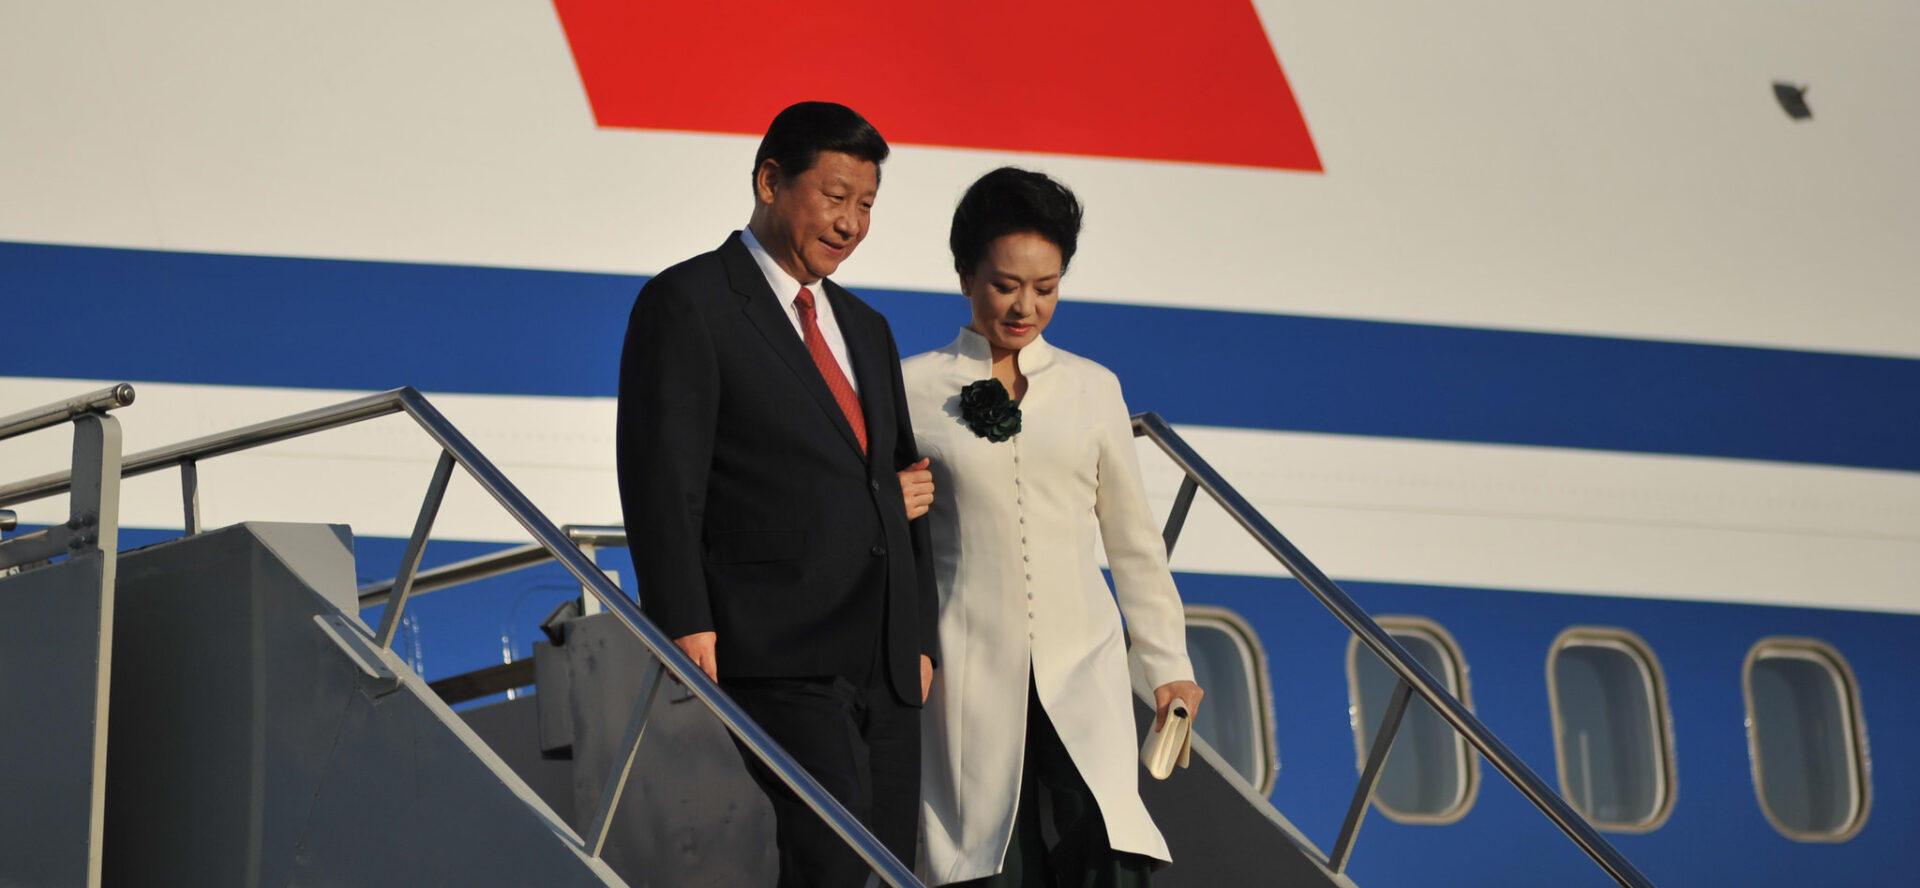 Le président chinois Xi Jinping pourrait-il rencontrer le pape François au Kazakhstan? | © APEC 2013/Flickr/CC BY 2.0